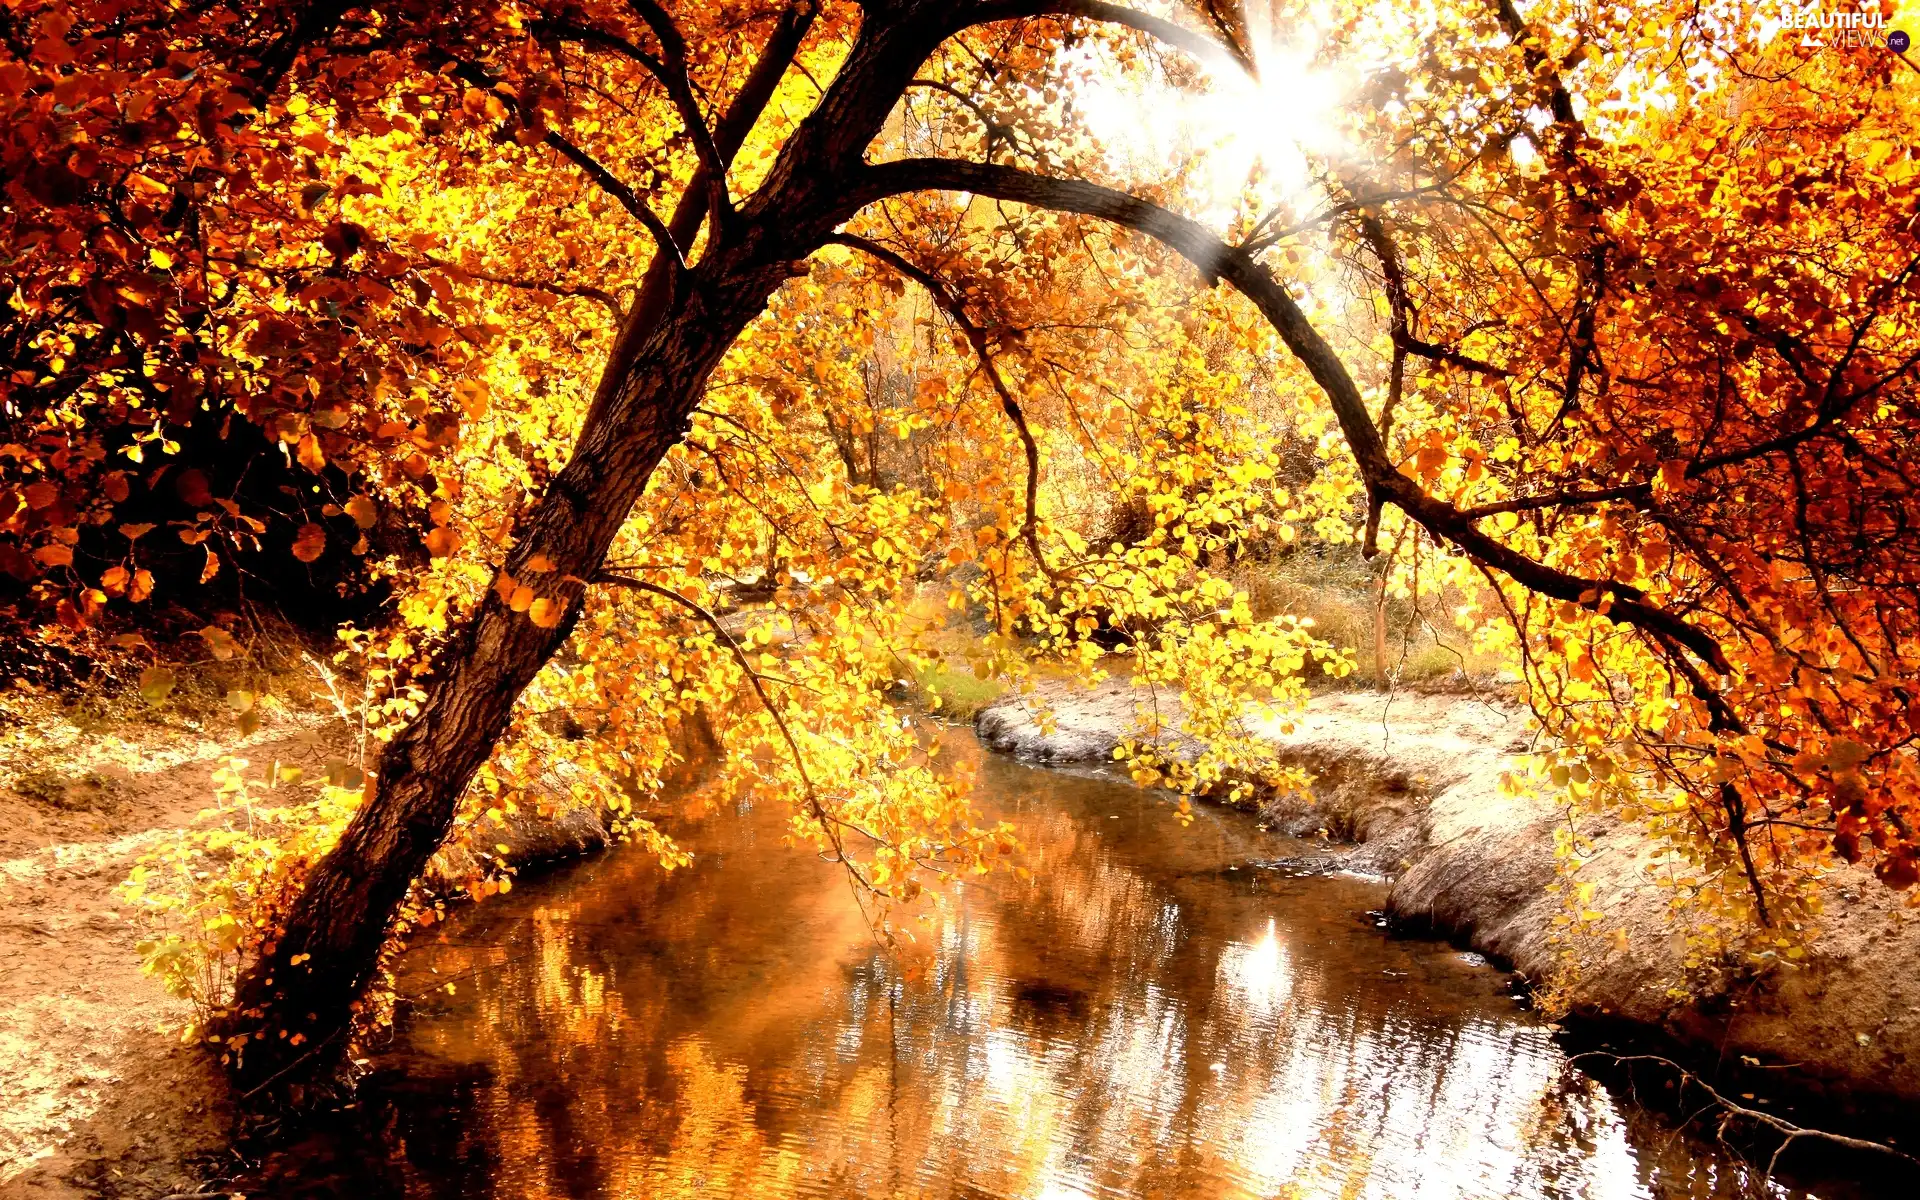 River, Golden automobile, autumn